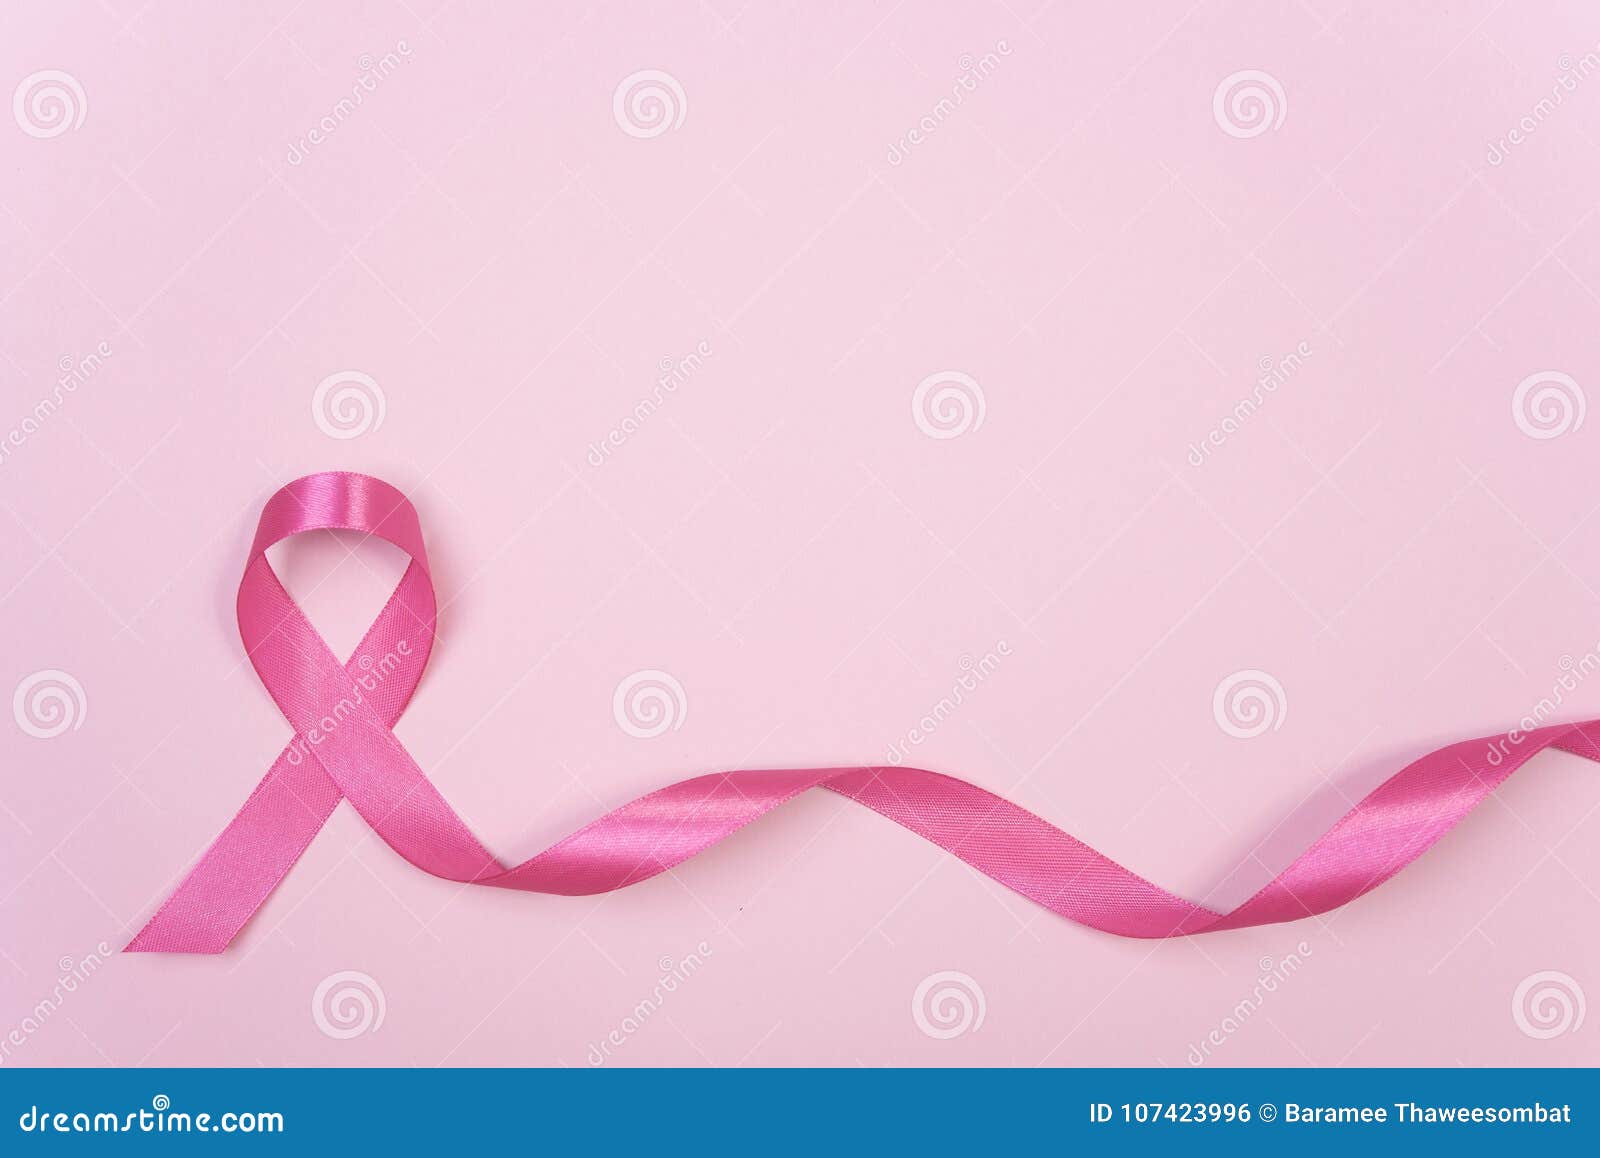 Nền hồng tươi sáng với chỗ trống để chèn tin tức về bệnh ung thư vú, cùng với hình nơ hồng đầy ý nghĩa, tạo nên một thiết kế đẹp mắt và ấn tượng. Đặc biệt, bạn có thể sử dụng không gian trống để chèn thêm thông tin của riêng mình.